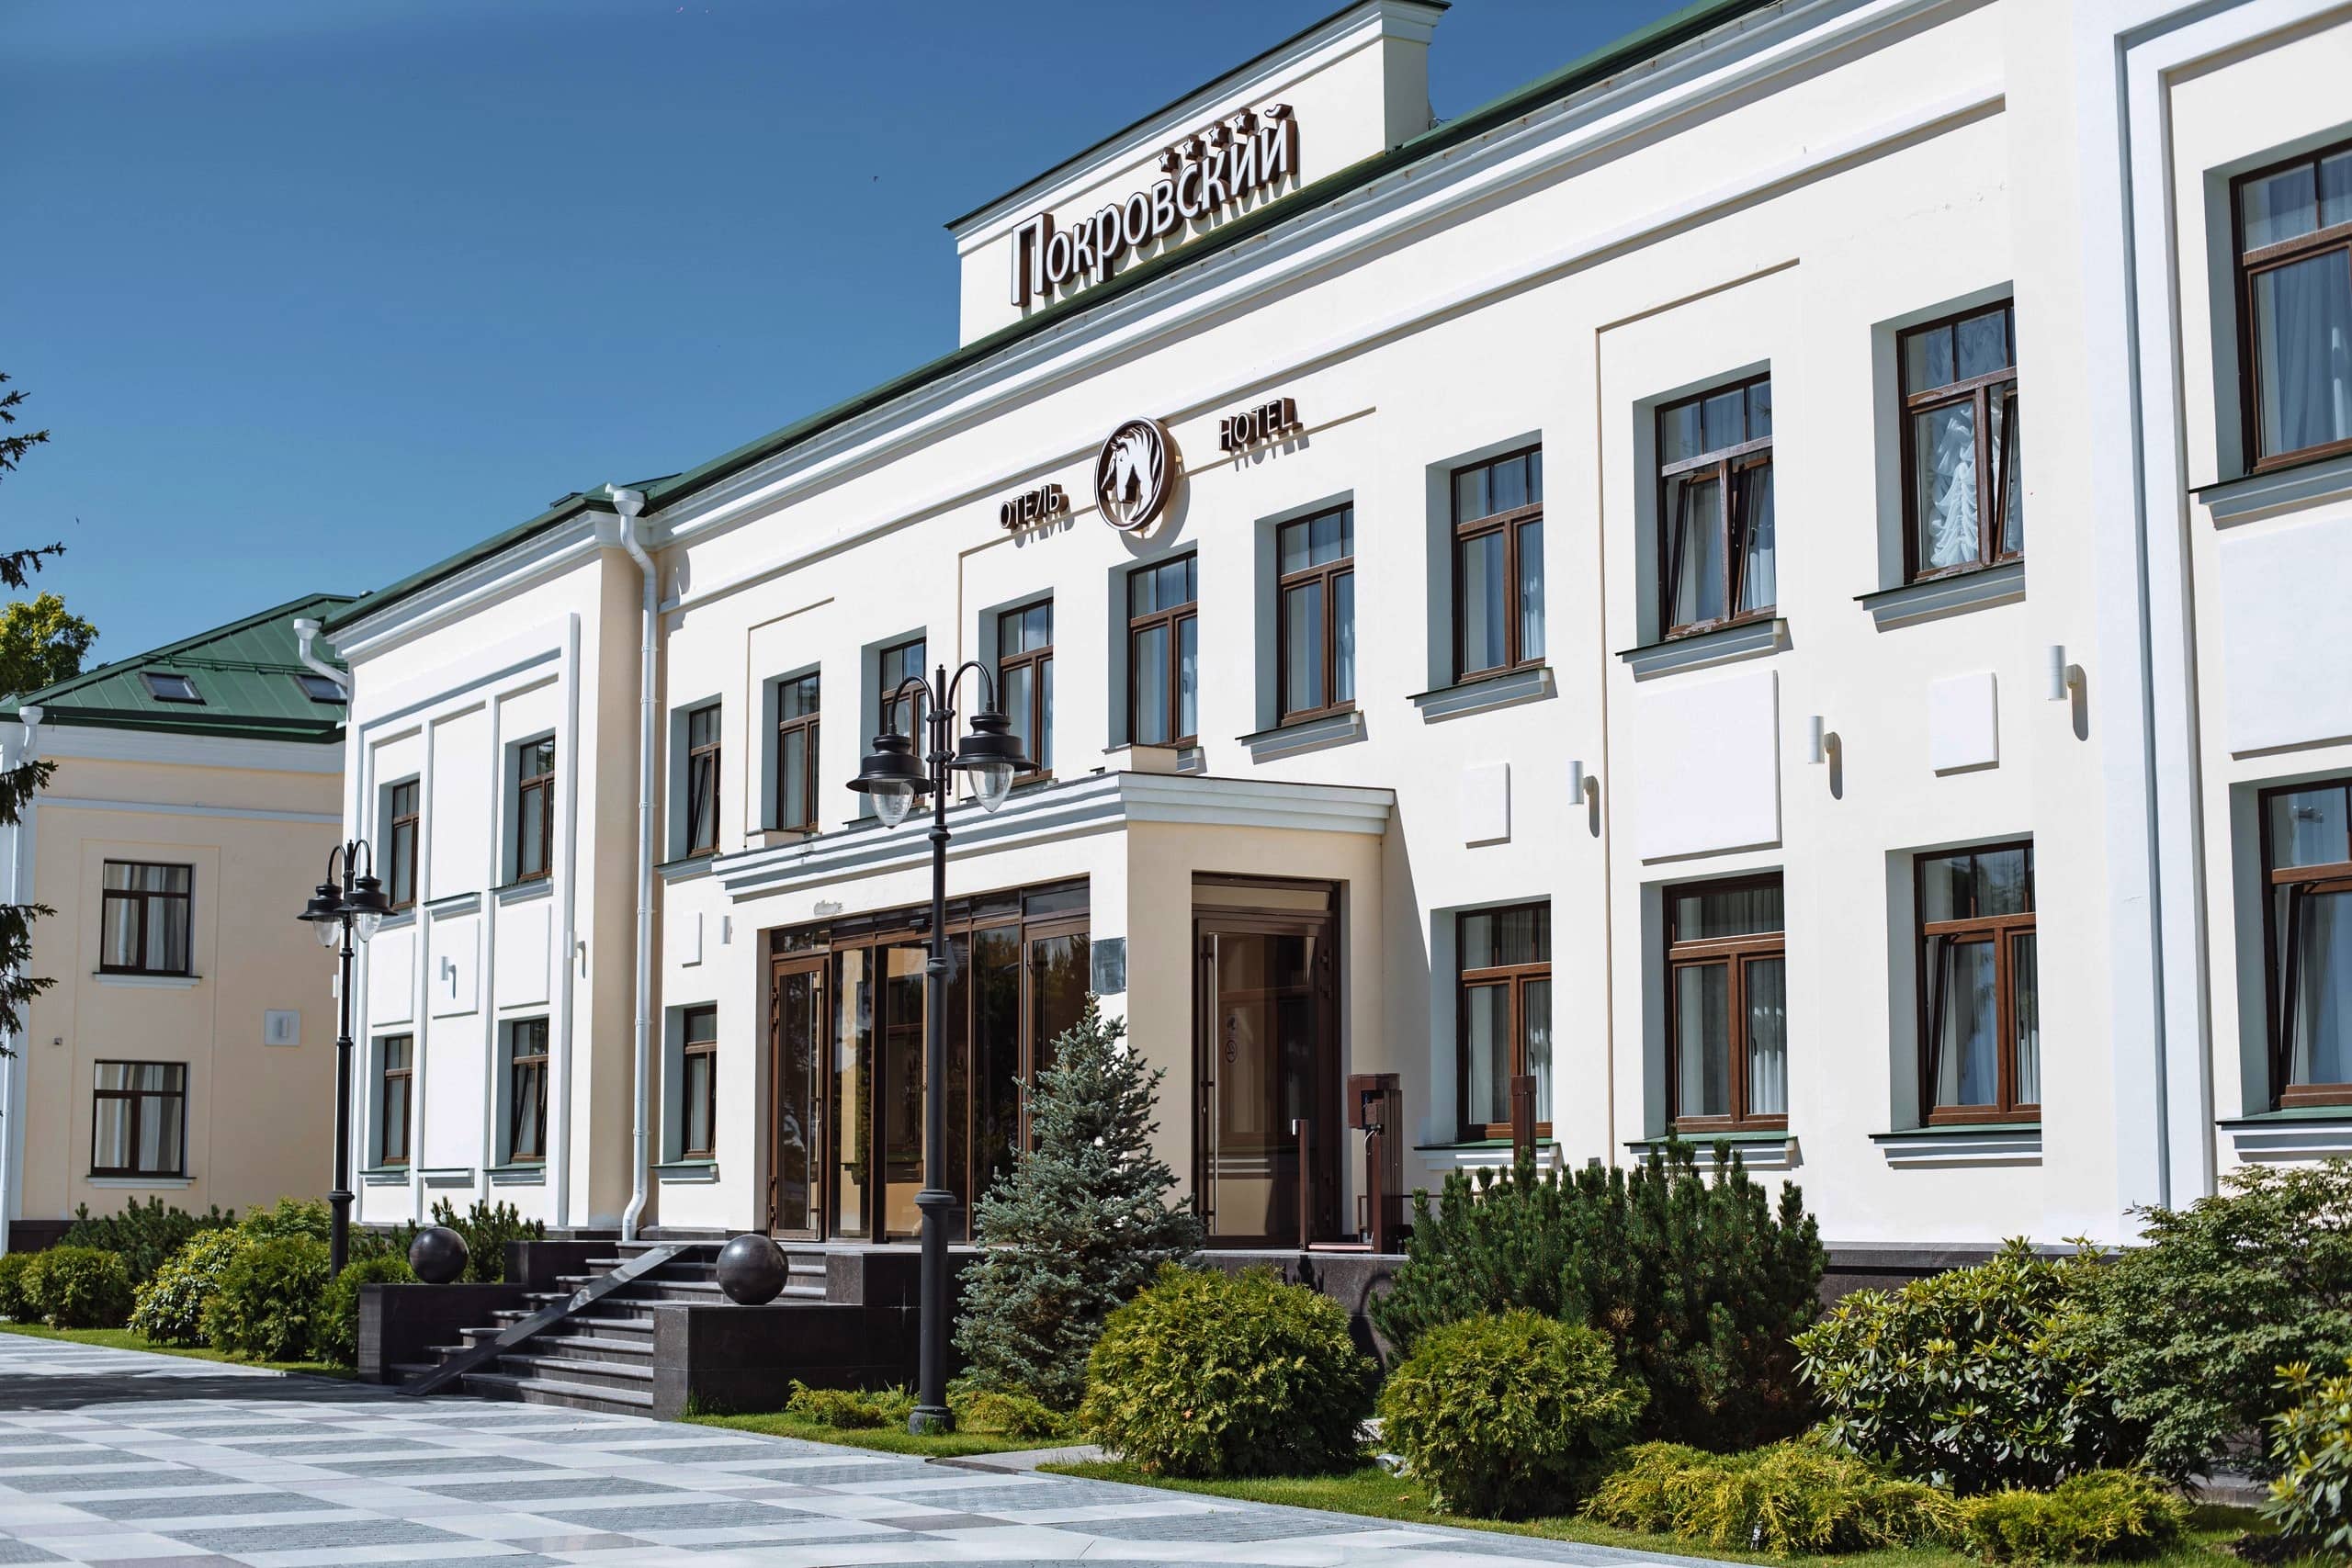 Здание отеля «Покровский», лучшие места для отдыха в Пскове.